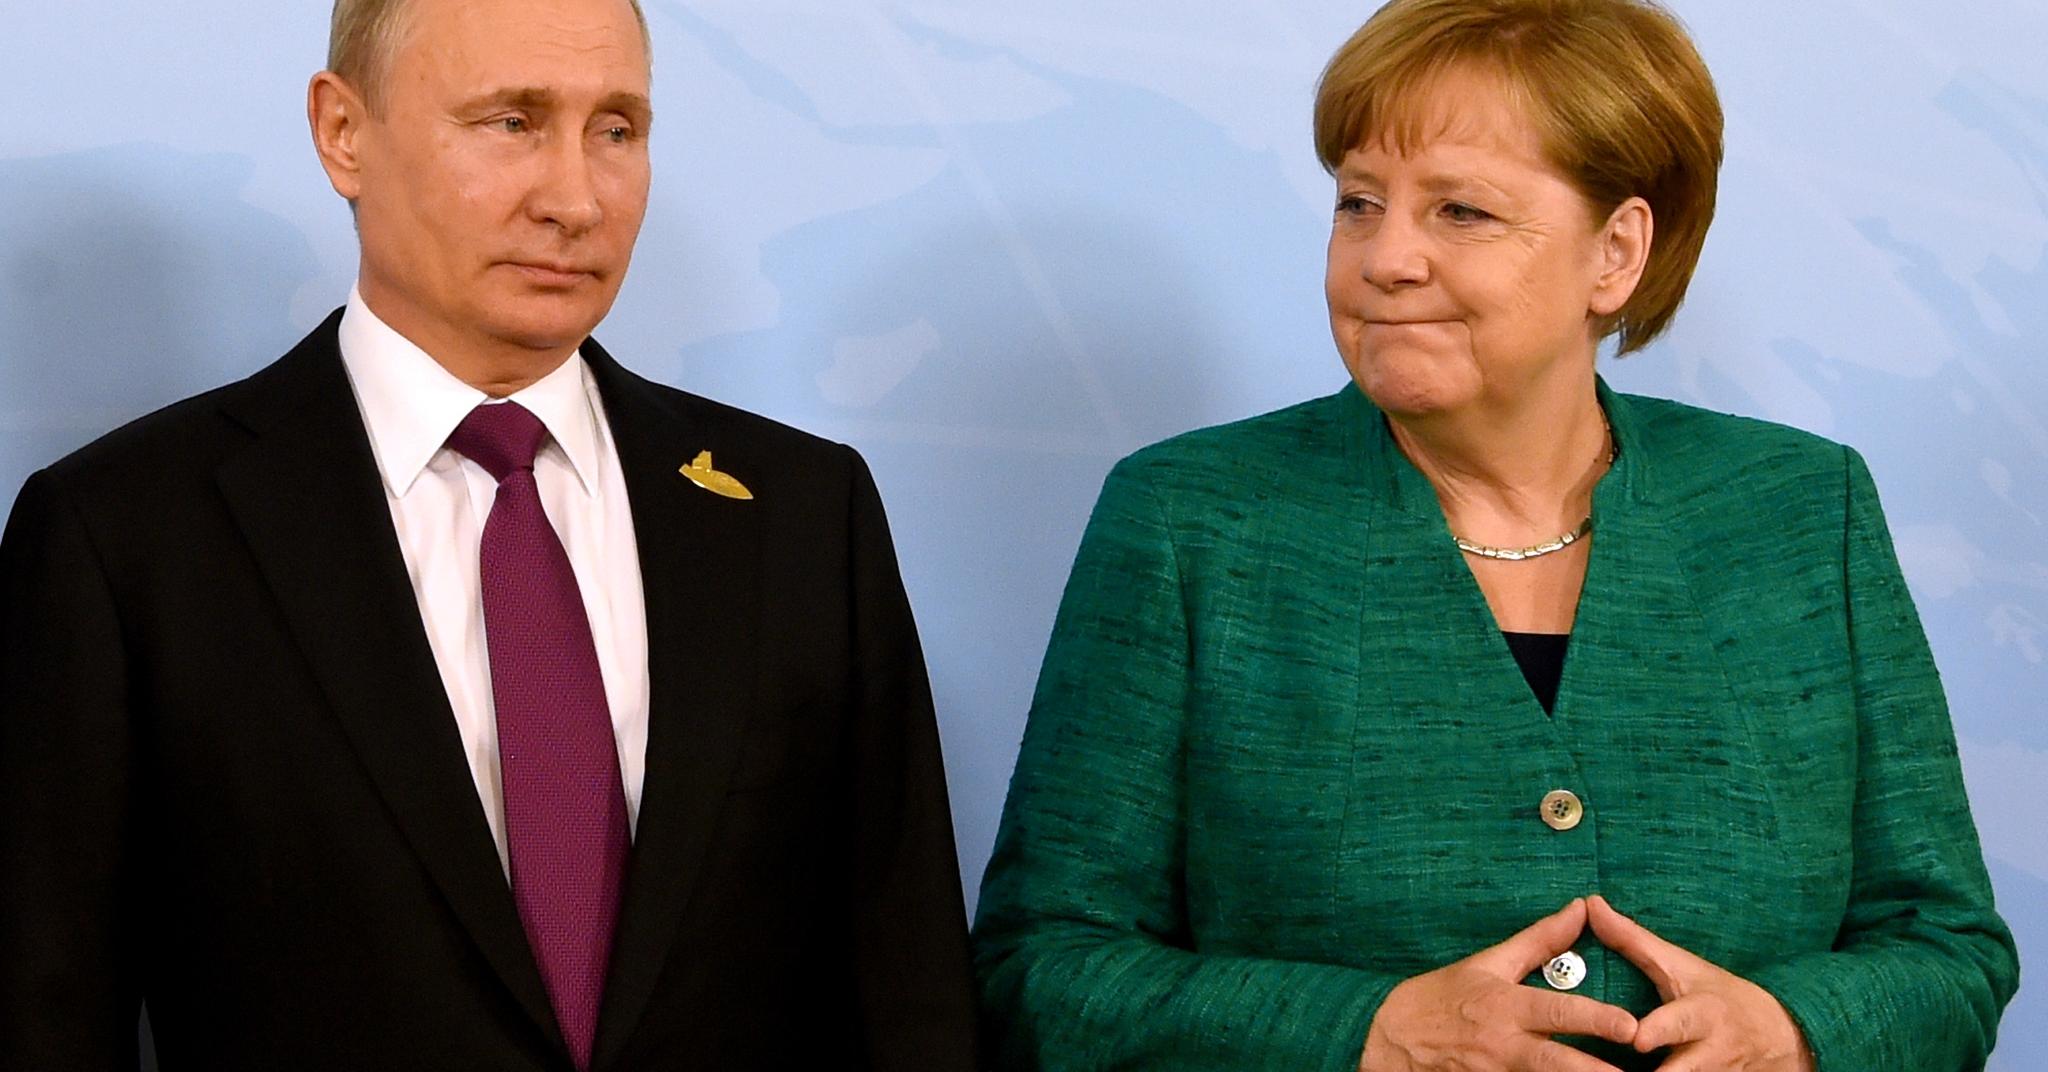 Kansler Angela Merkel ligger svært godt an til å vinne valget 24. september. Har Russlands president Vladimir Putin planer om å blande seg inn?